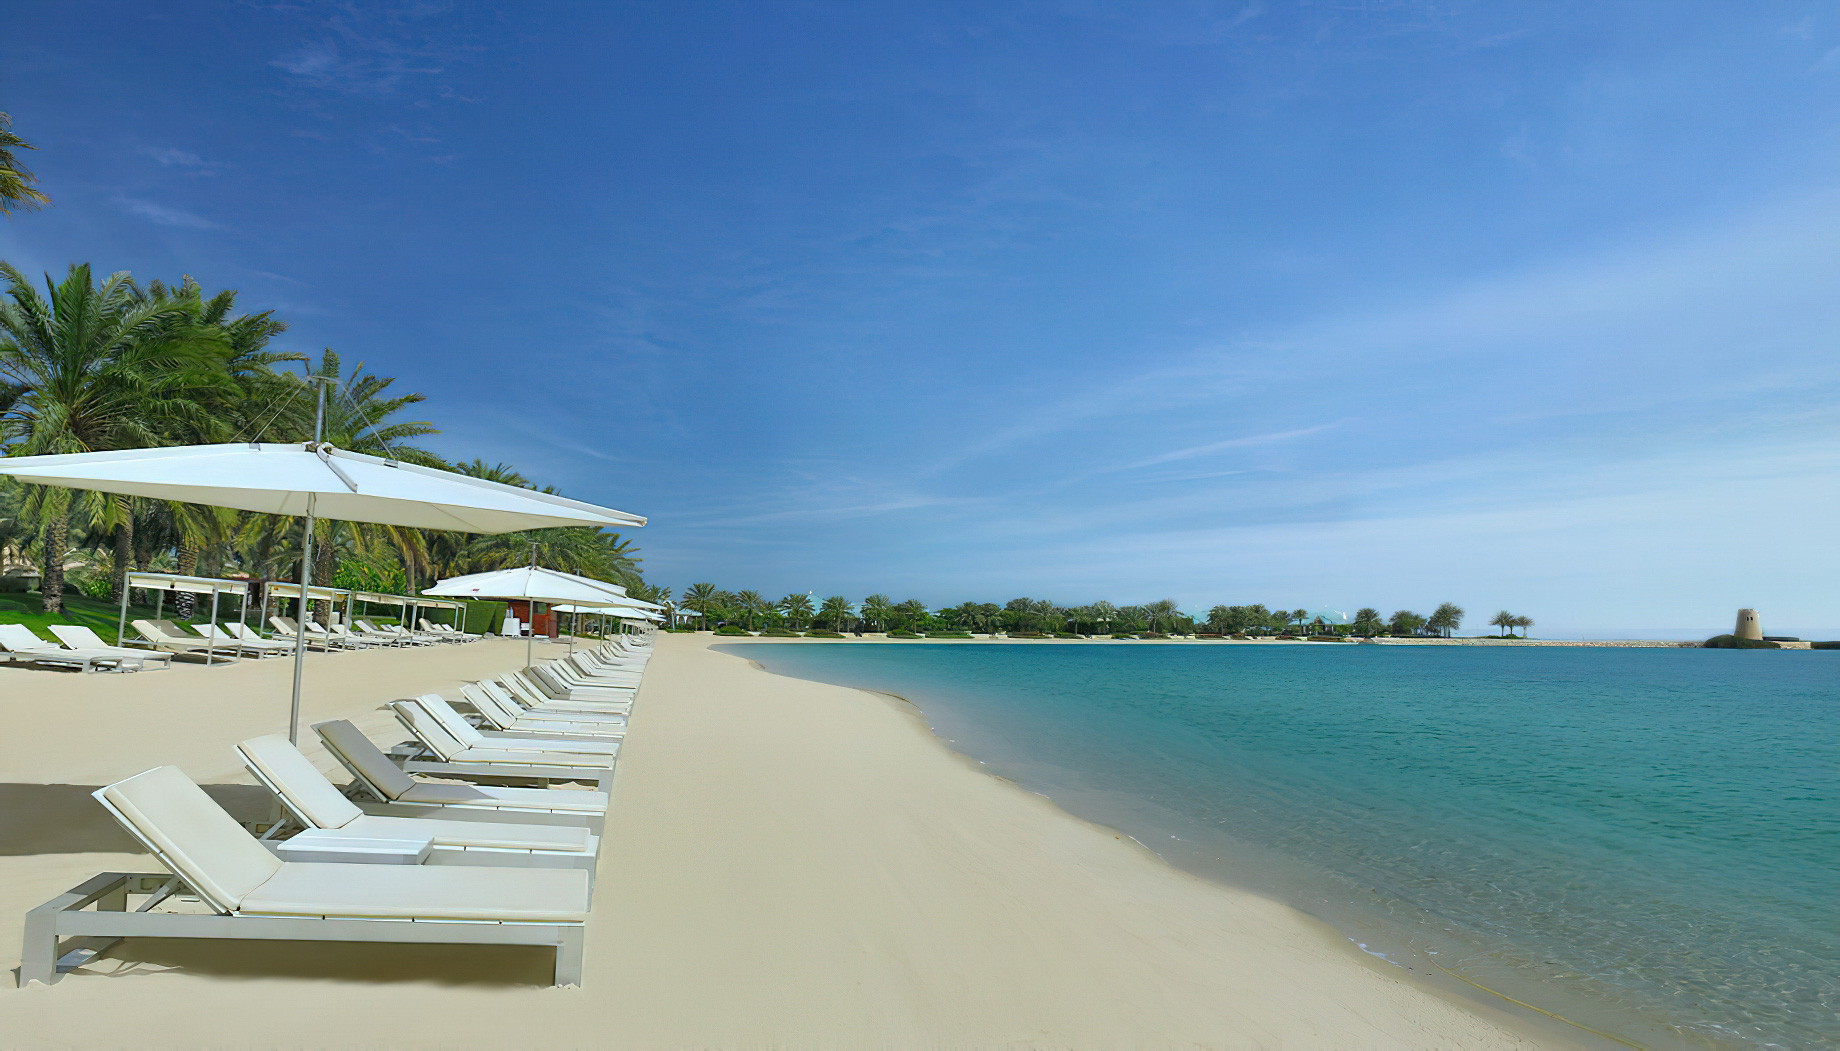 The Ritz-Carlton, Bahrain Resort Hotel - Manama, Bahrain - The Royal Beach Club Private Beach